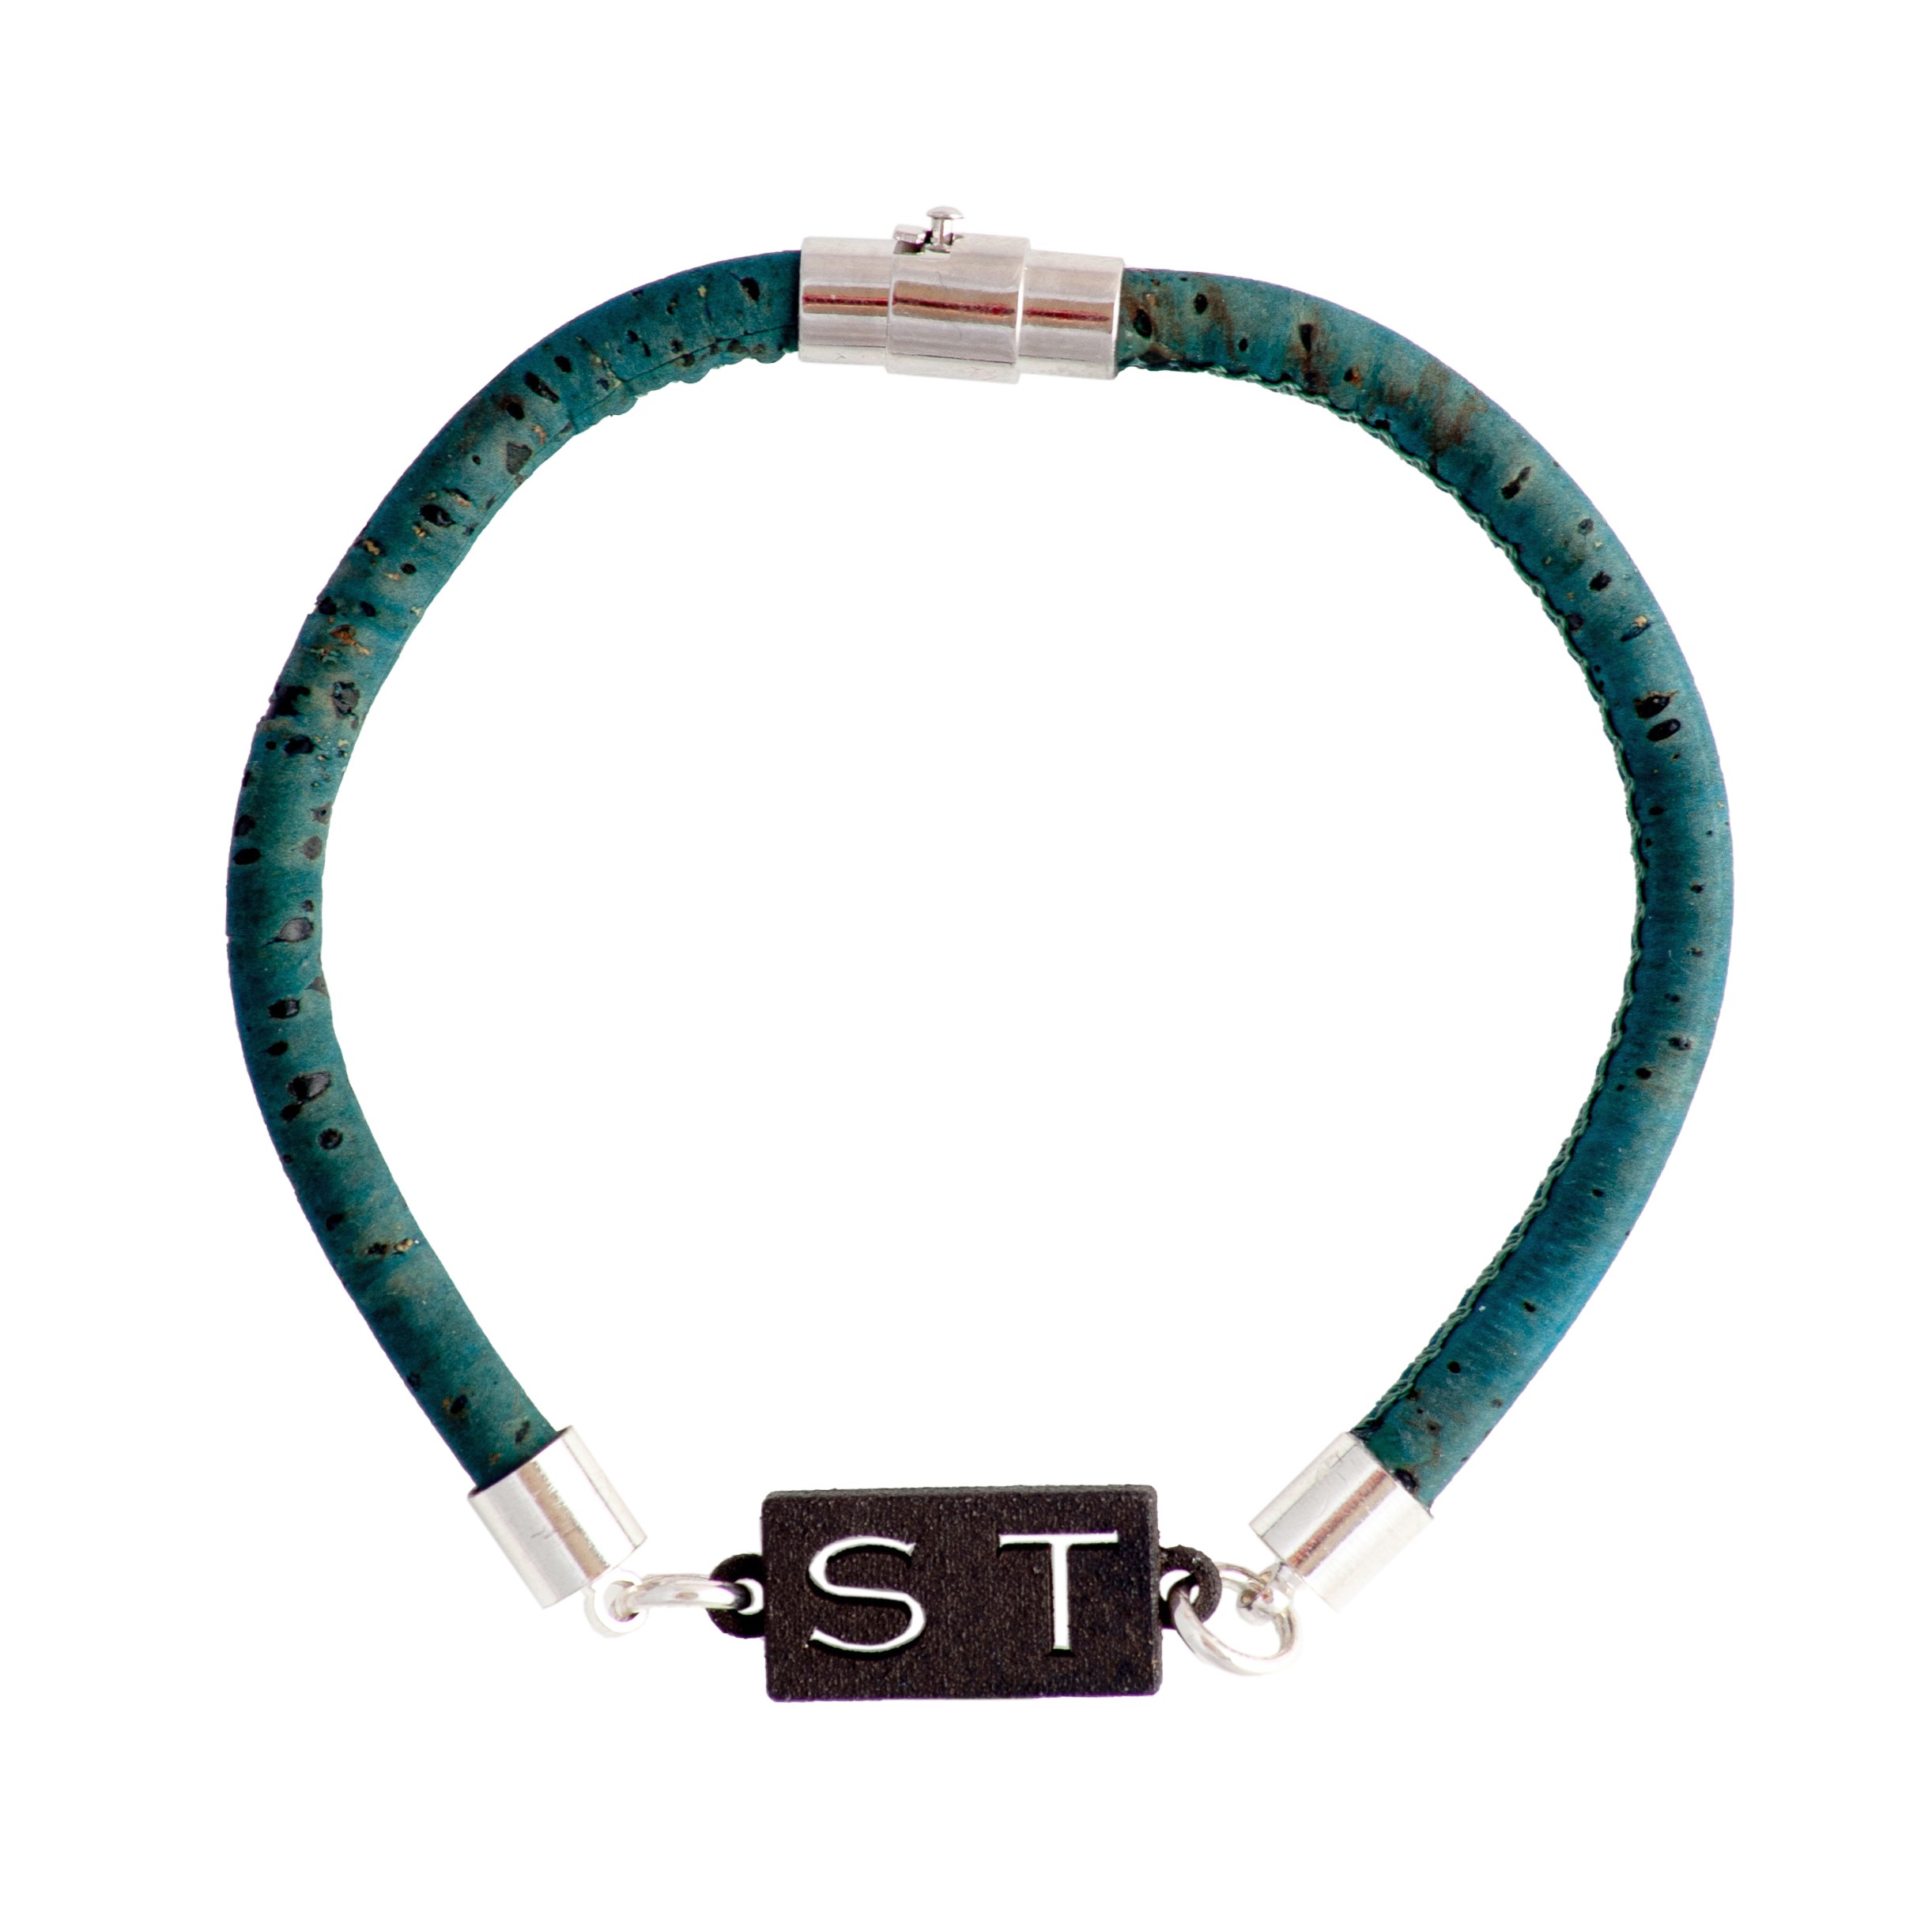 personalised-initials-bracelets-for-men-dark-turquoise-green-blue-vegan-cork-bracelet-for-men-uk